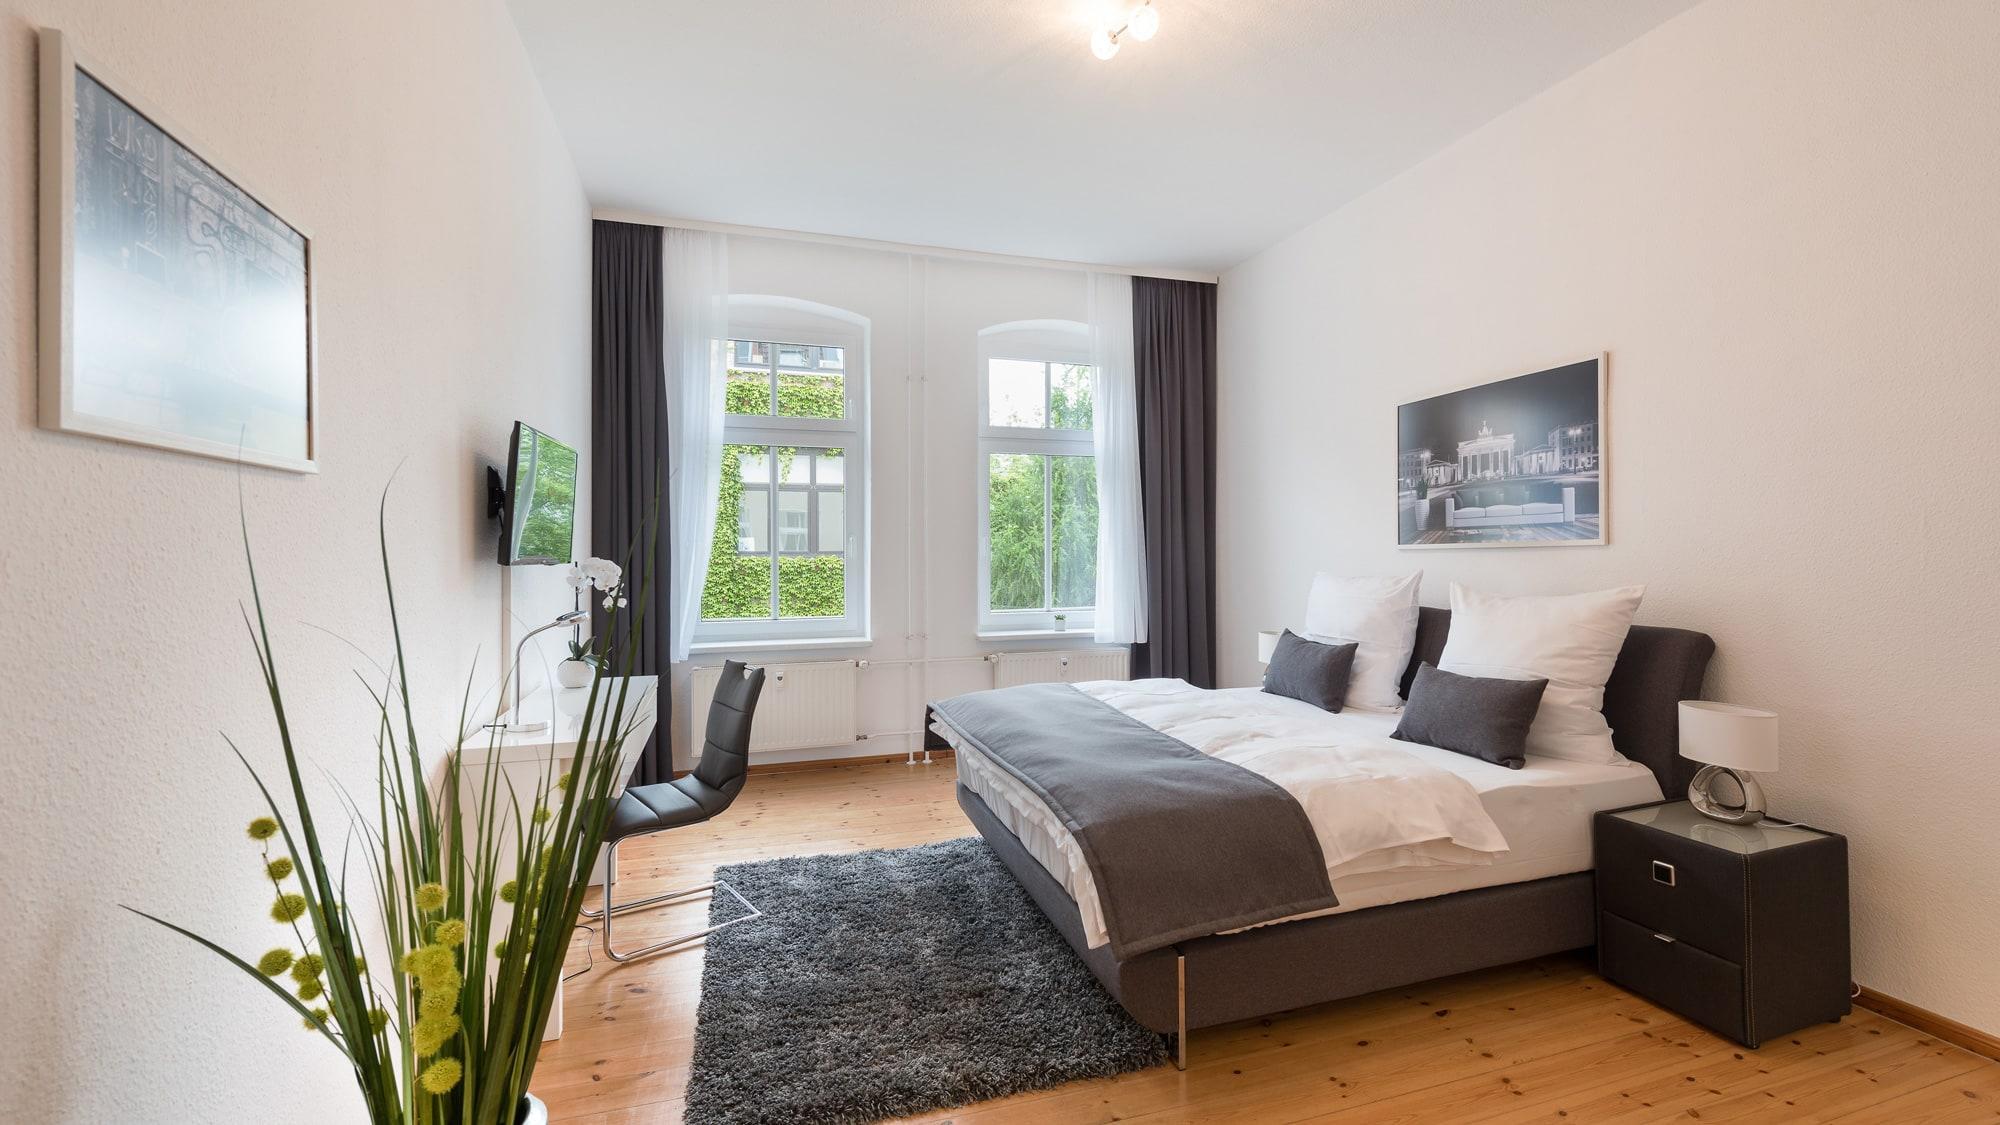 Möblierte Wohnung in Berlin mit ausgezeichnetem Serviceangebot